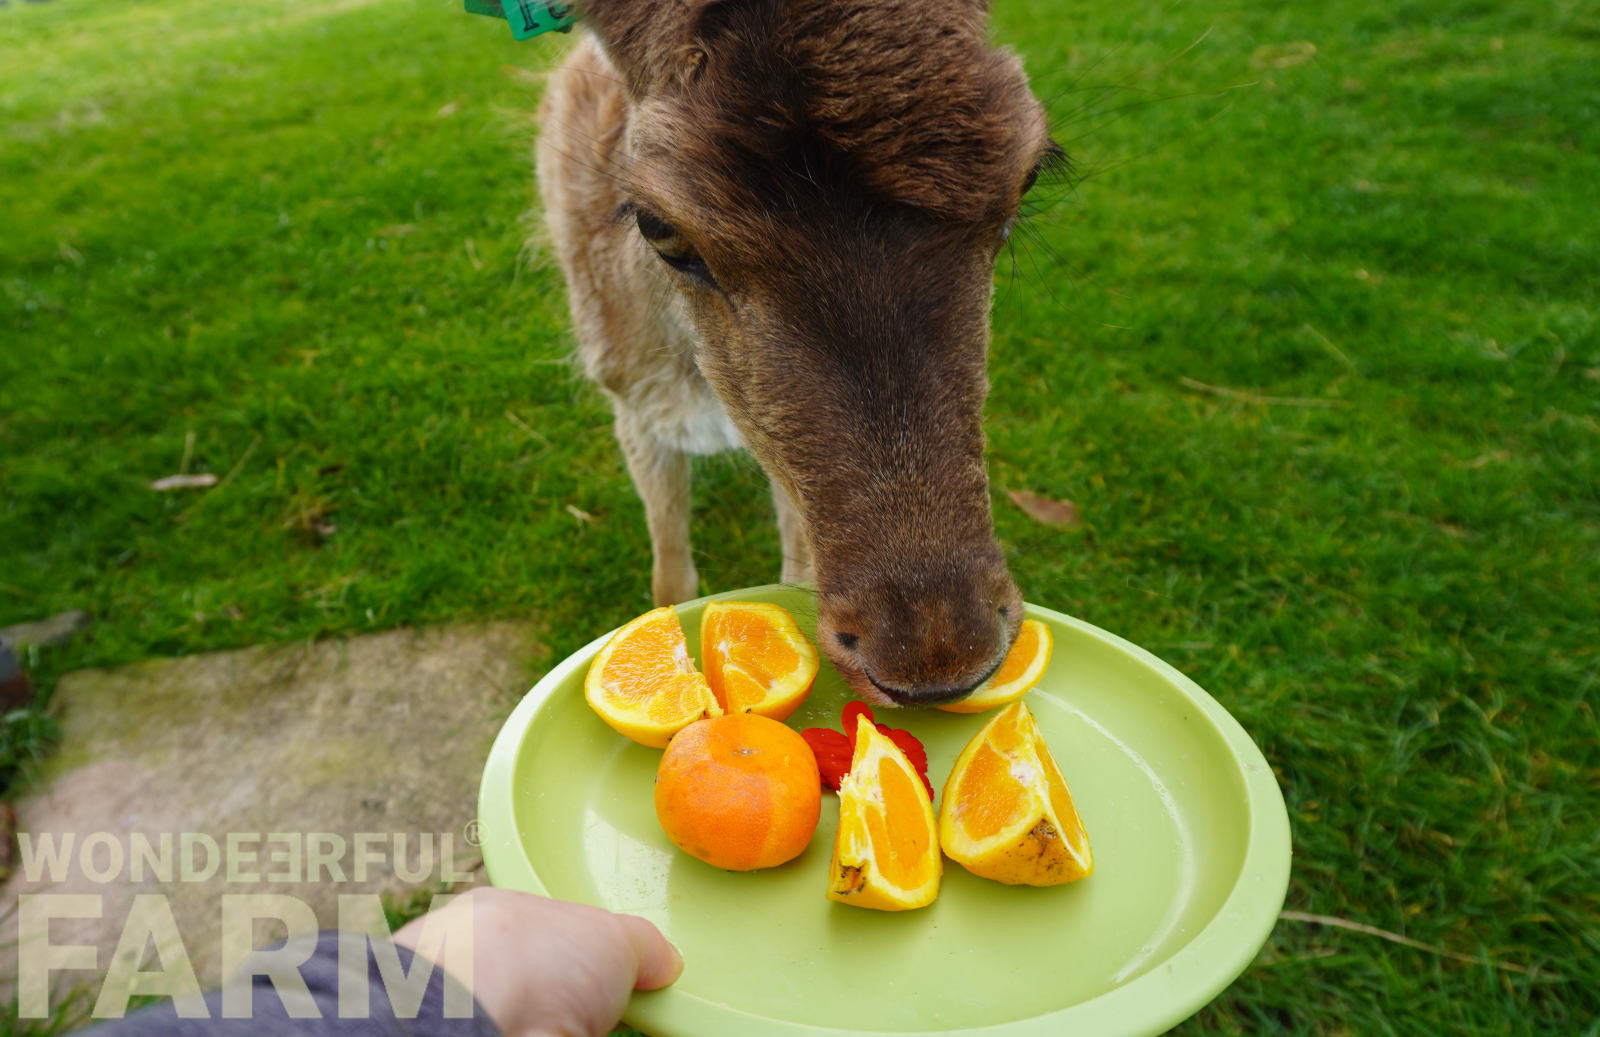 deer eating oranges and mandarines